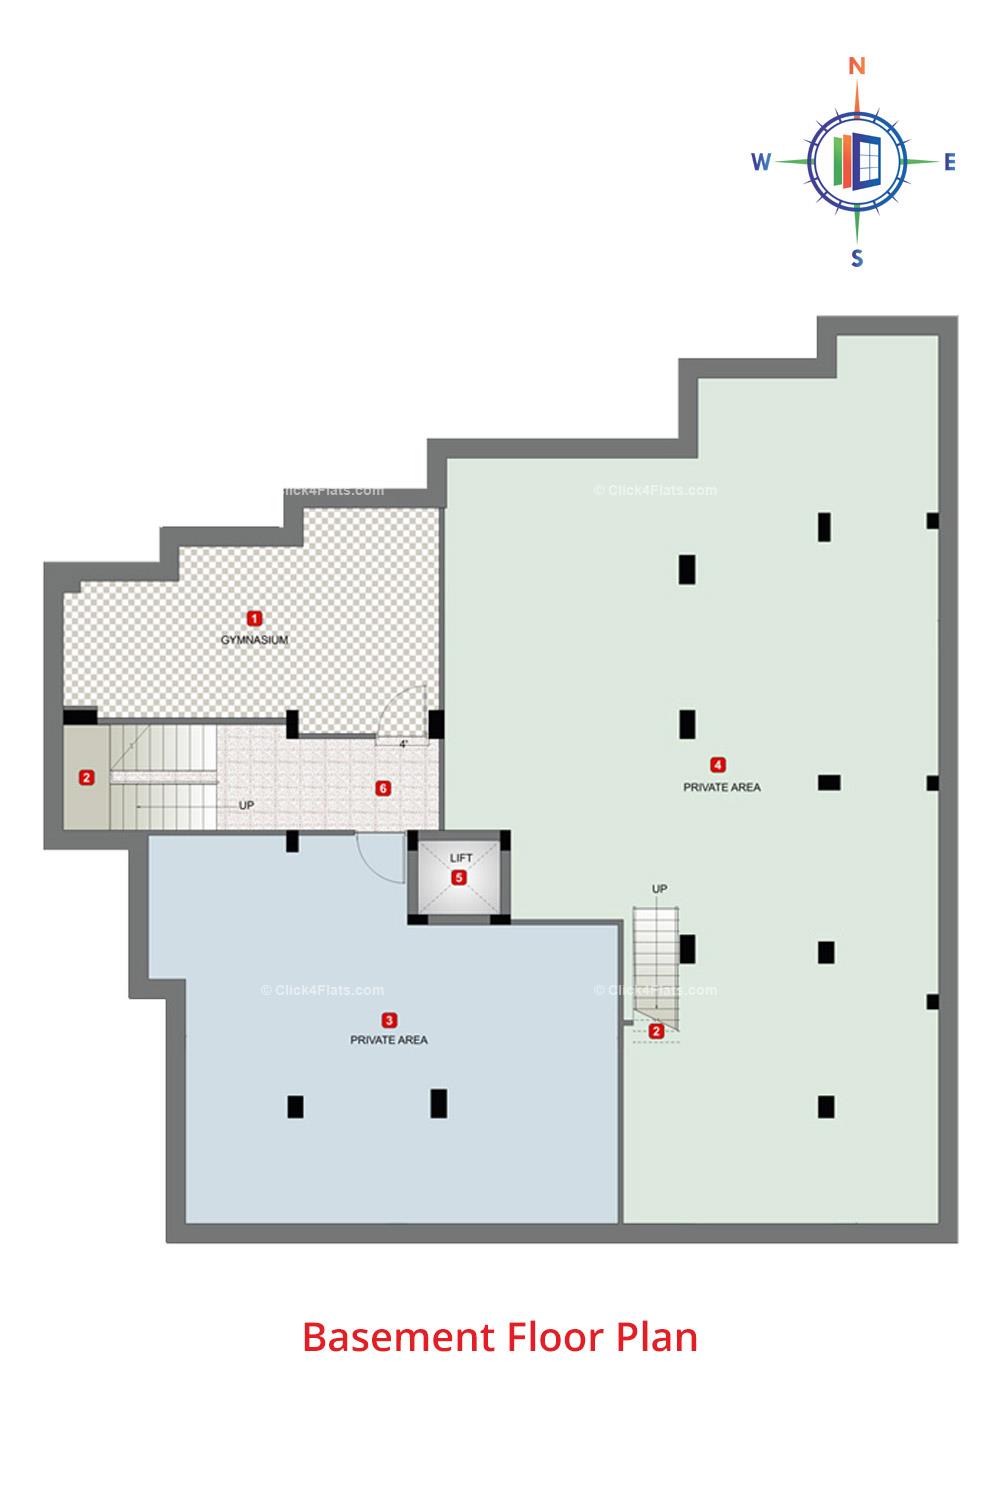 The Orient Basement Floor Plan